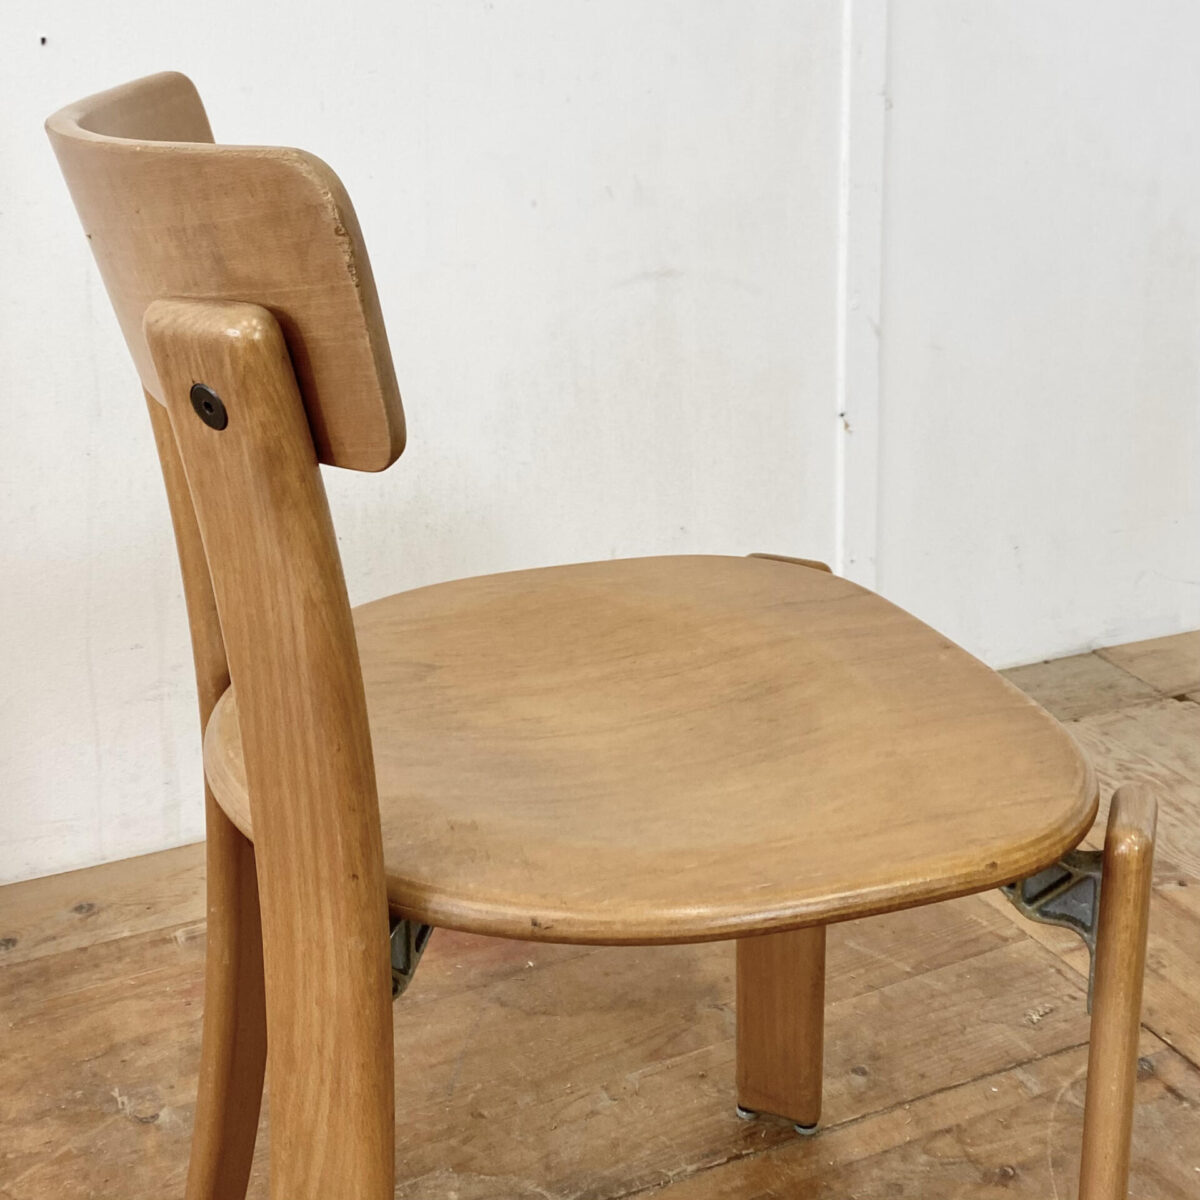 Deuxieme.shop Schweizer Buchenholz Stühle von Dietiker. Stühle aus Stein am Rhein. Preis pro Stuhl. Gebrauchte Qualitätsstühle mit diversen Gebrauchsspuren und Patina in stabilem Zustand. 